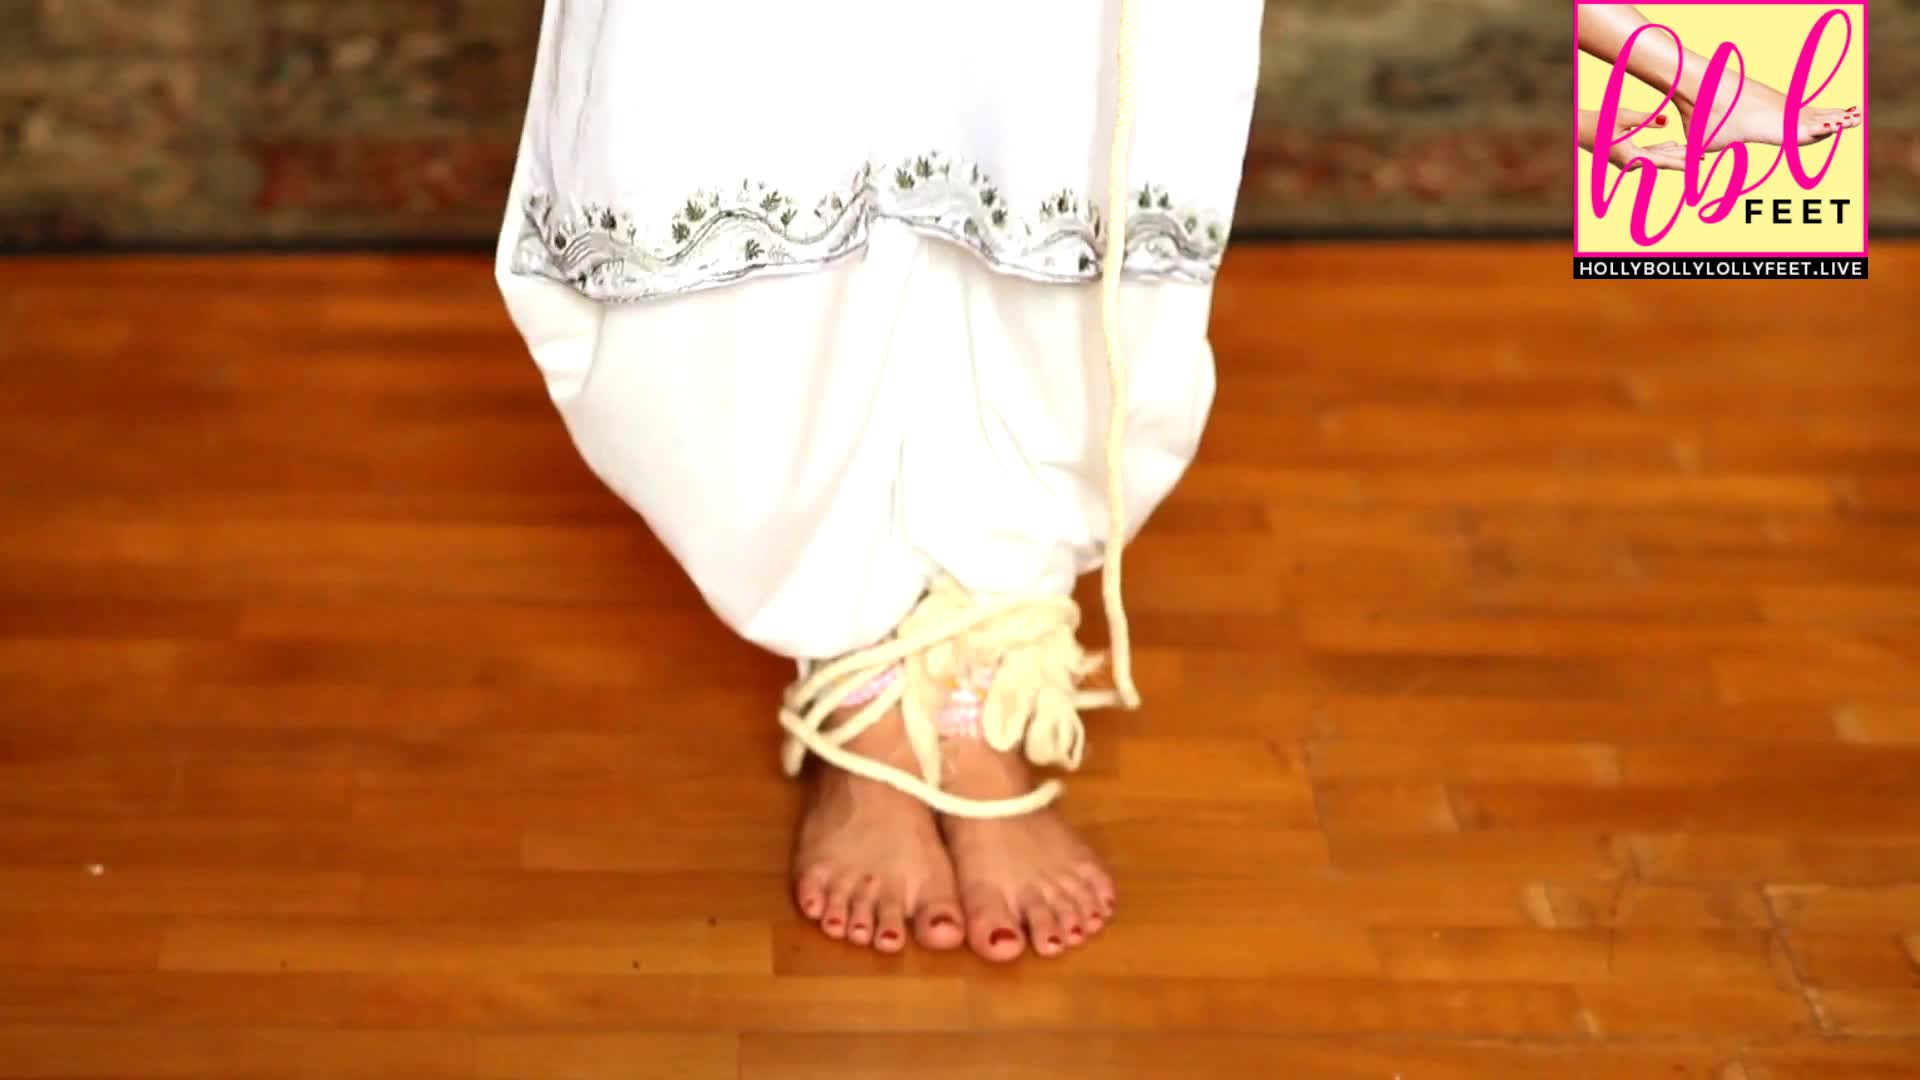 Faria sheikh Feet Close Up